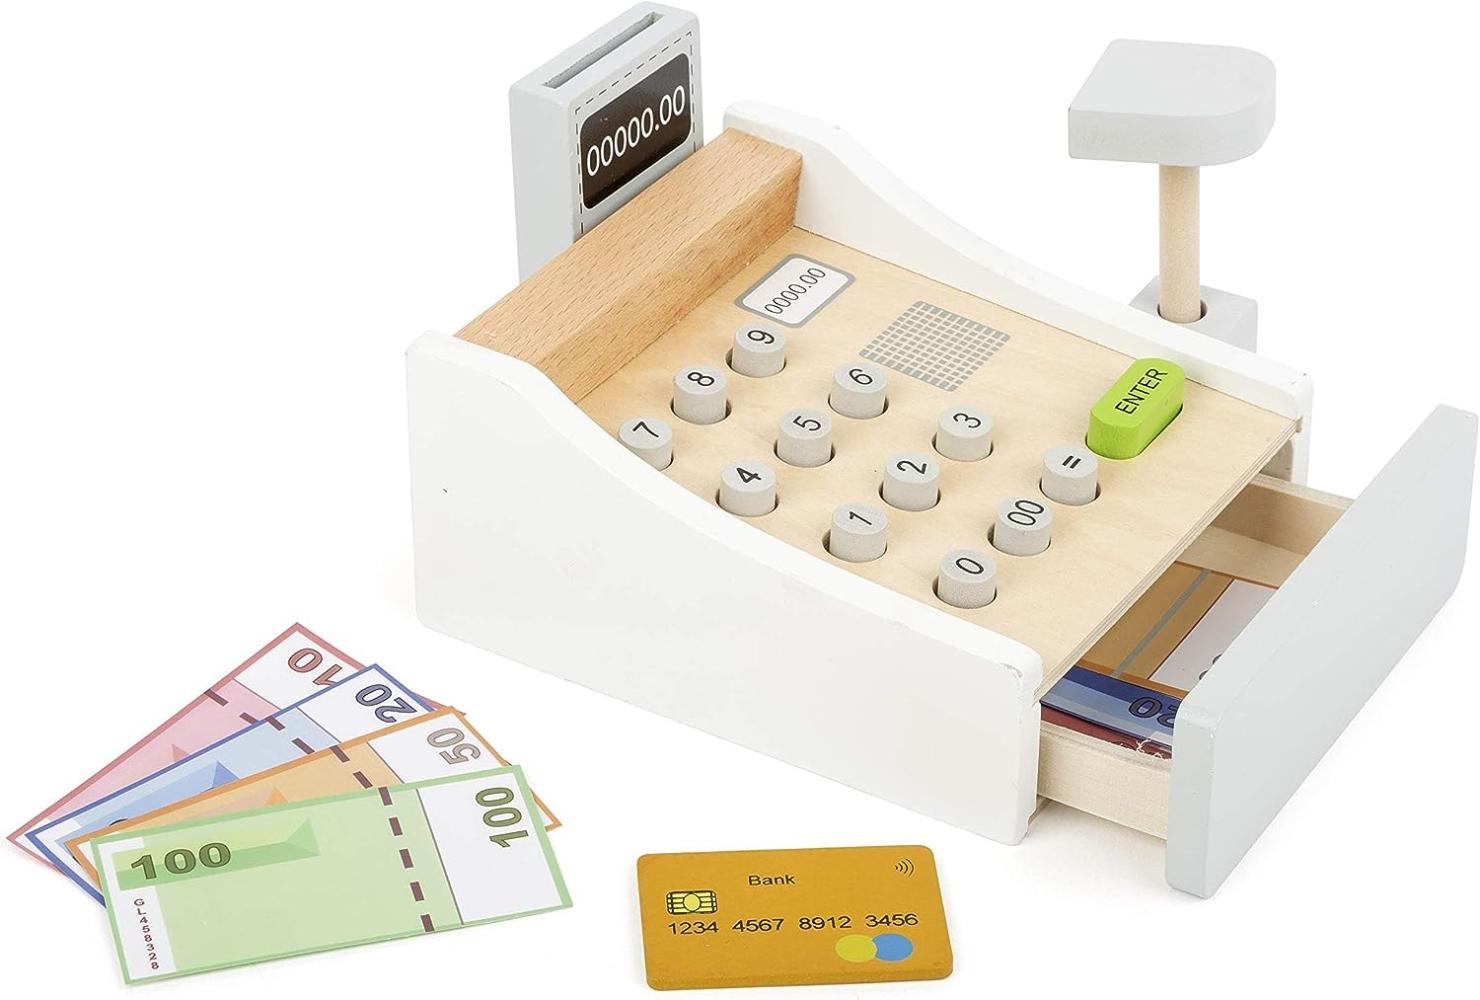 Small Foot 11099 Spielkasse aus Holz, inkl. Scanner, Kartenlesegerät, Spielgeld und Kreditkarten Spielzeug, Mehrfarbig Bild 1